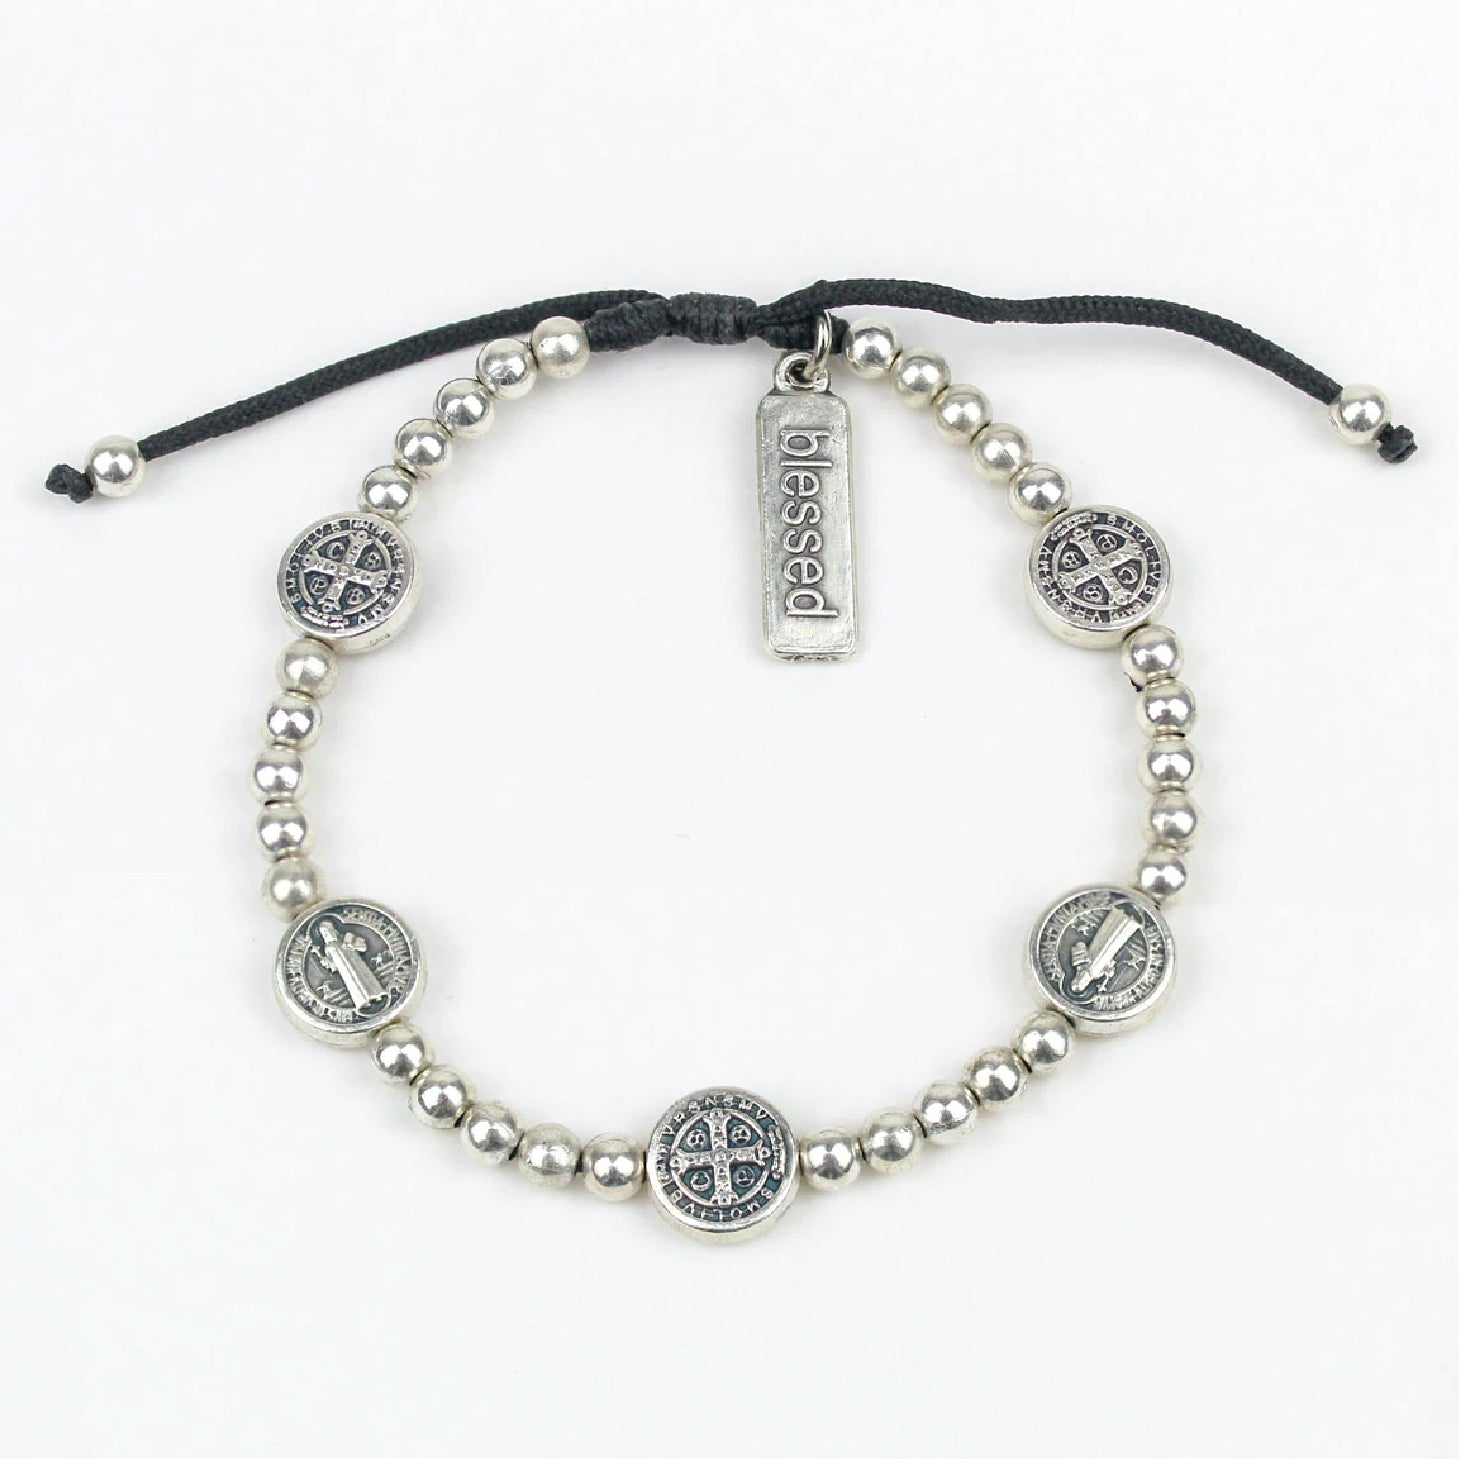 Catholic Saints Bracelet, Blessing Bracelet, Protection Bracelet, Catholic  Gift, Christian Jewelry, All Saints Bracelet, Confirmation Gift - Etsy